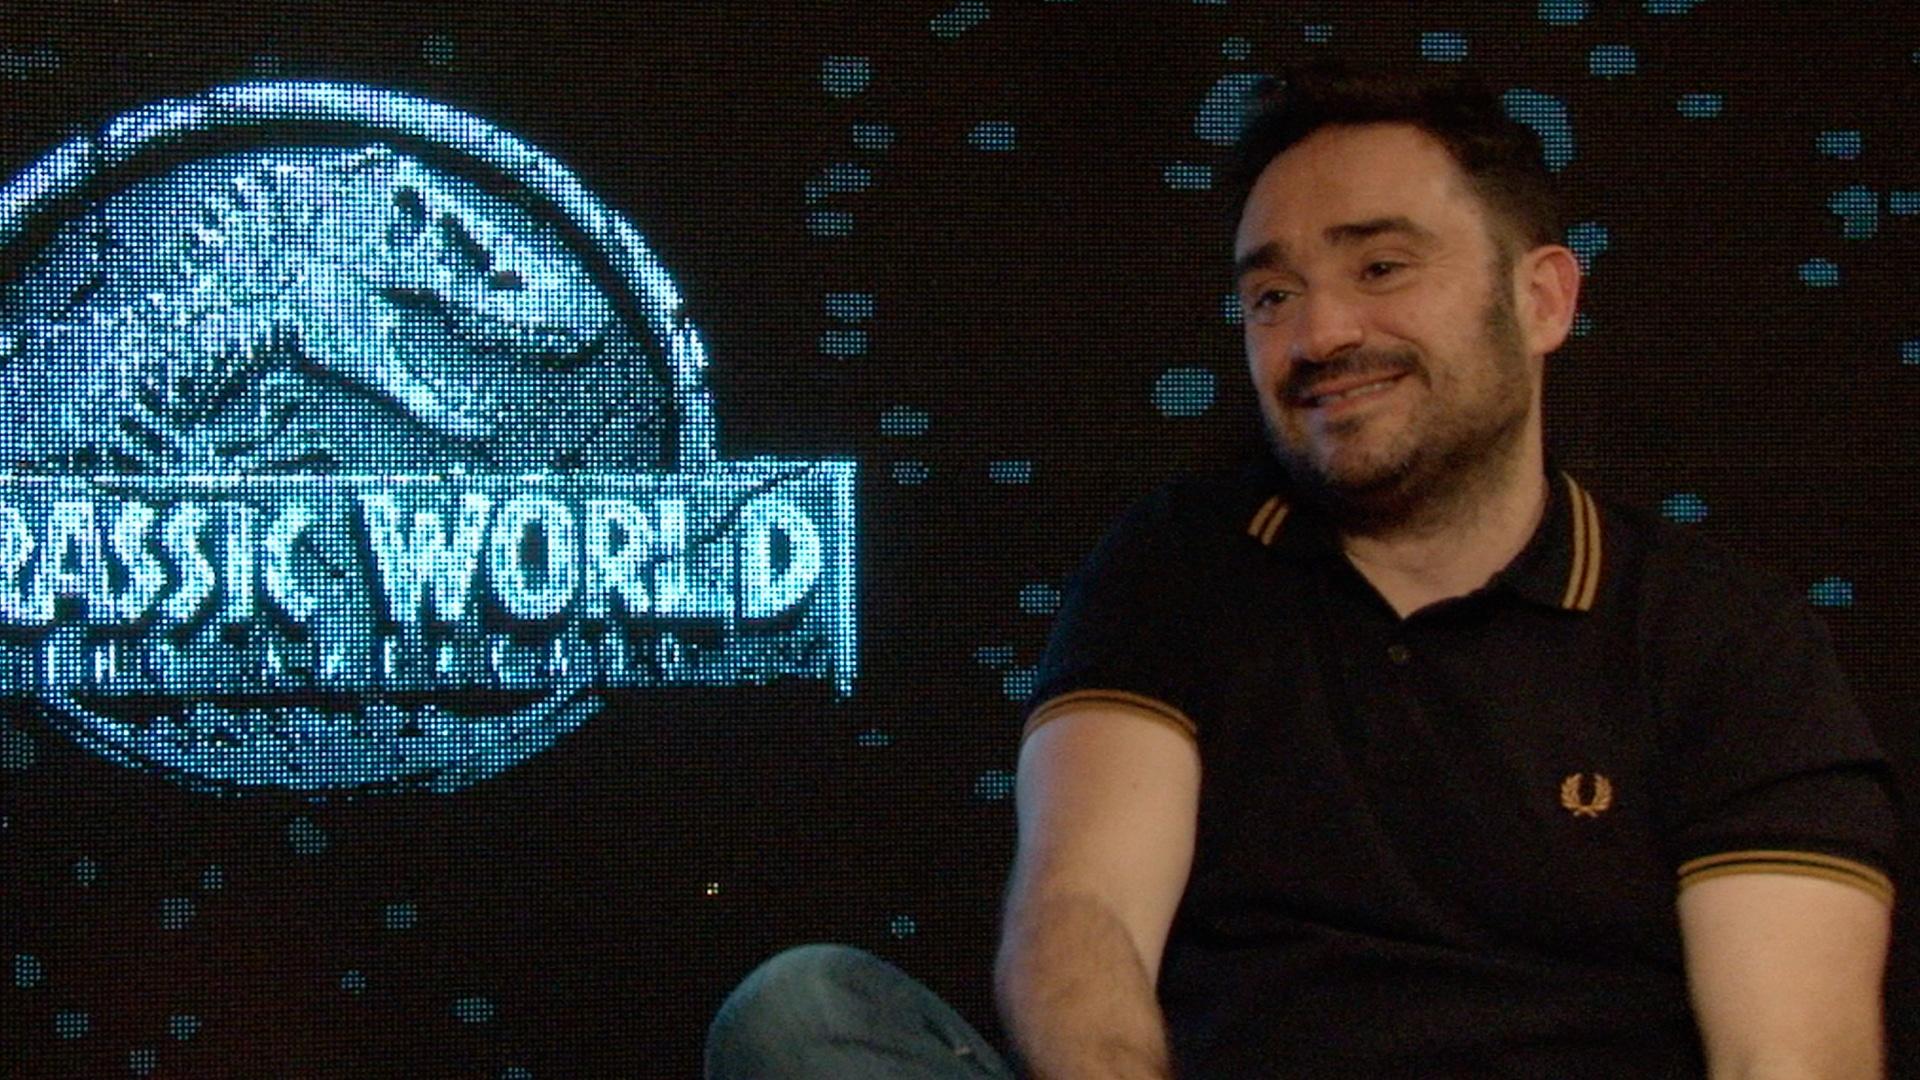 Entrevistamos J. A. Bayona, diretor de Jurassic World: Reino Ameaçado